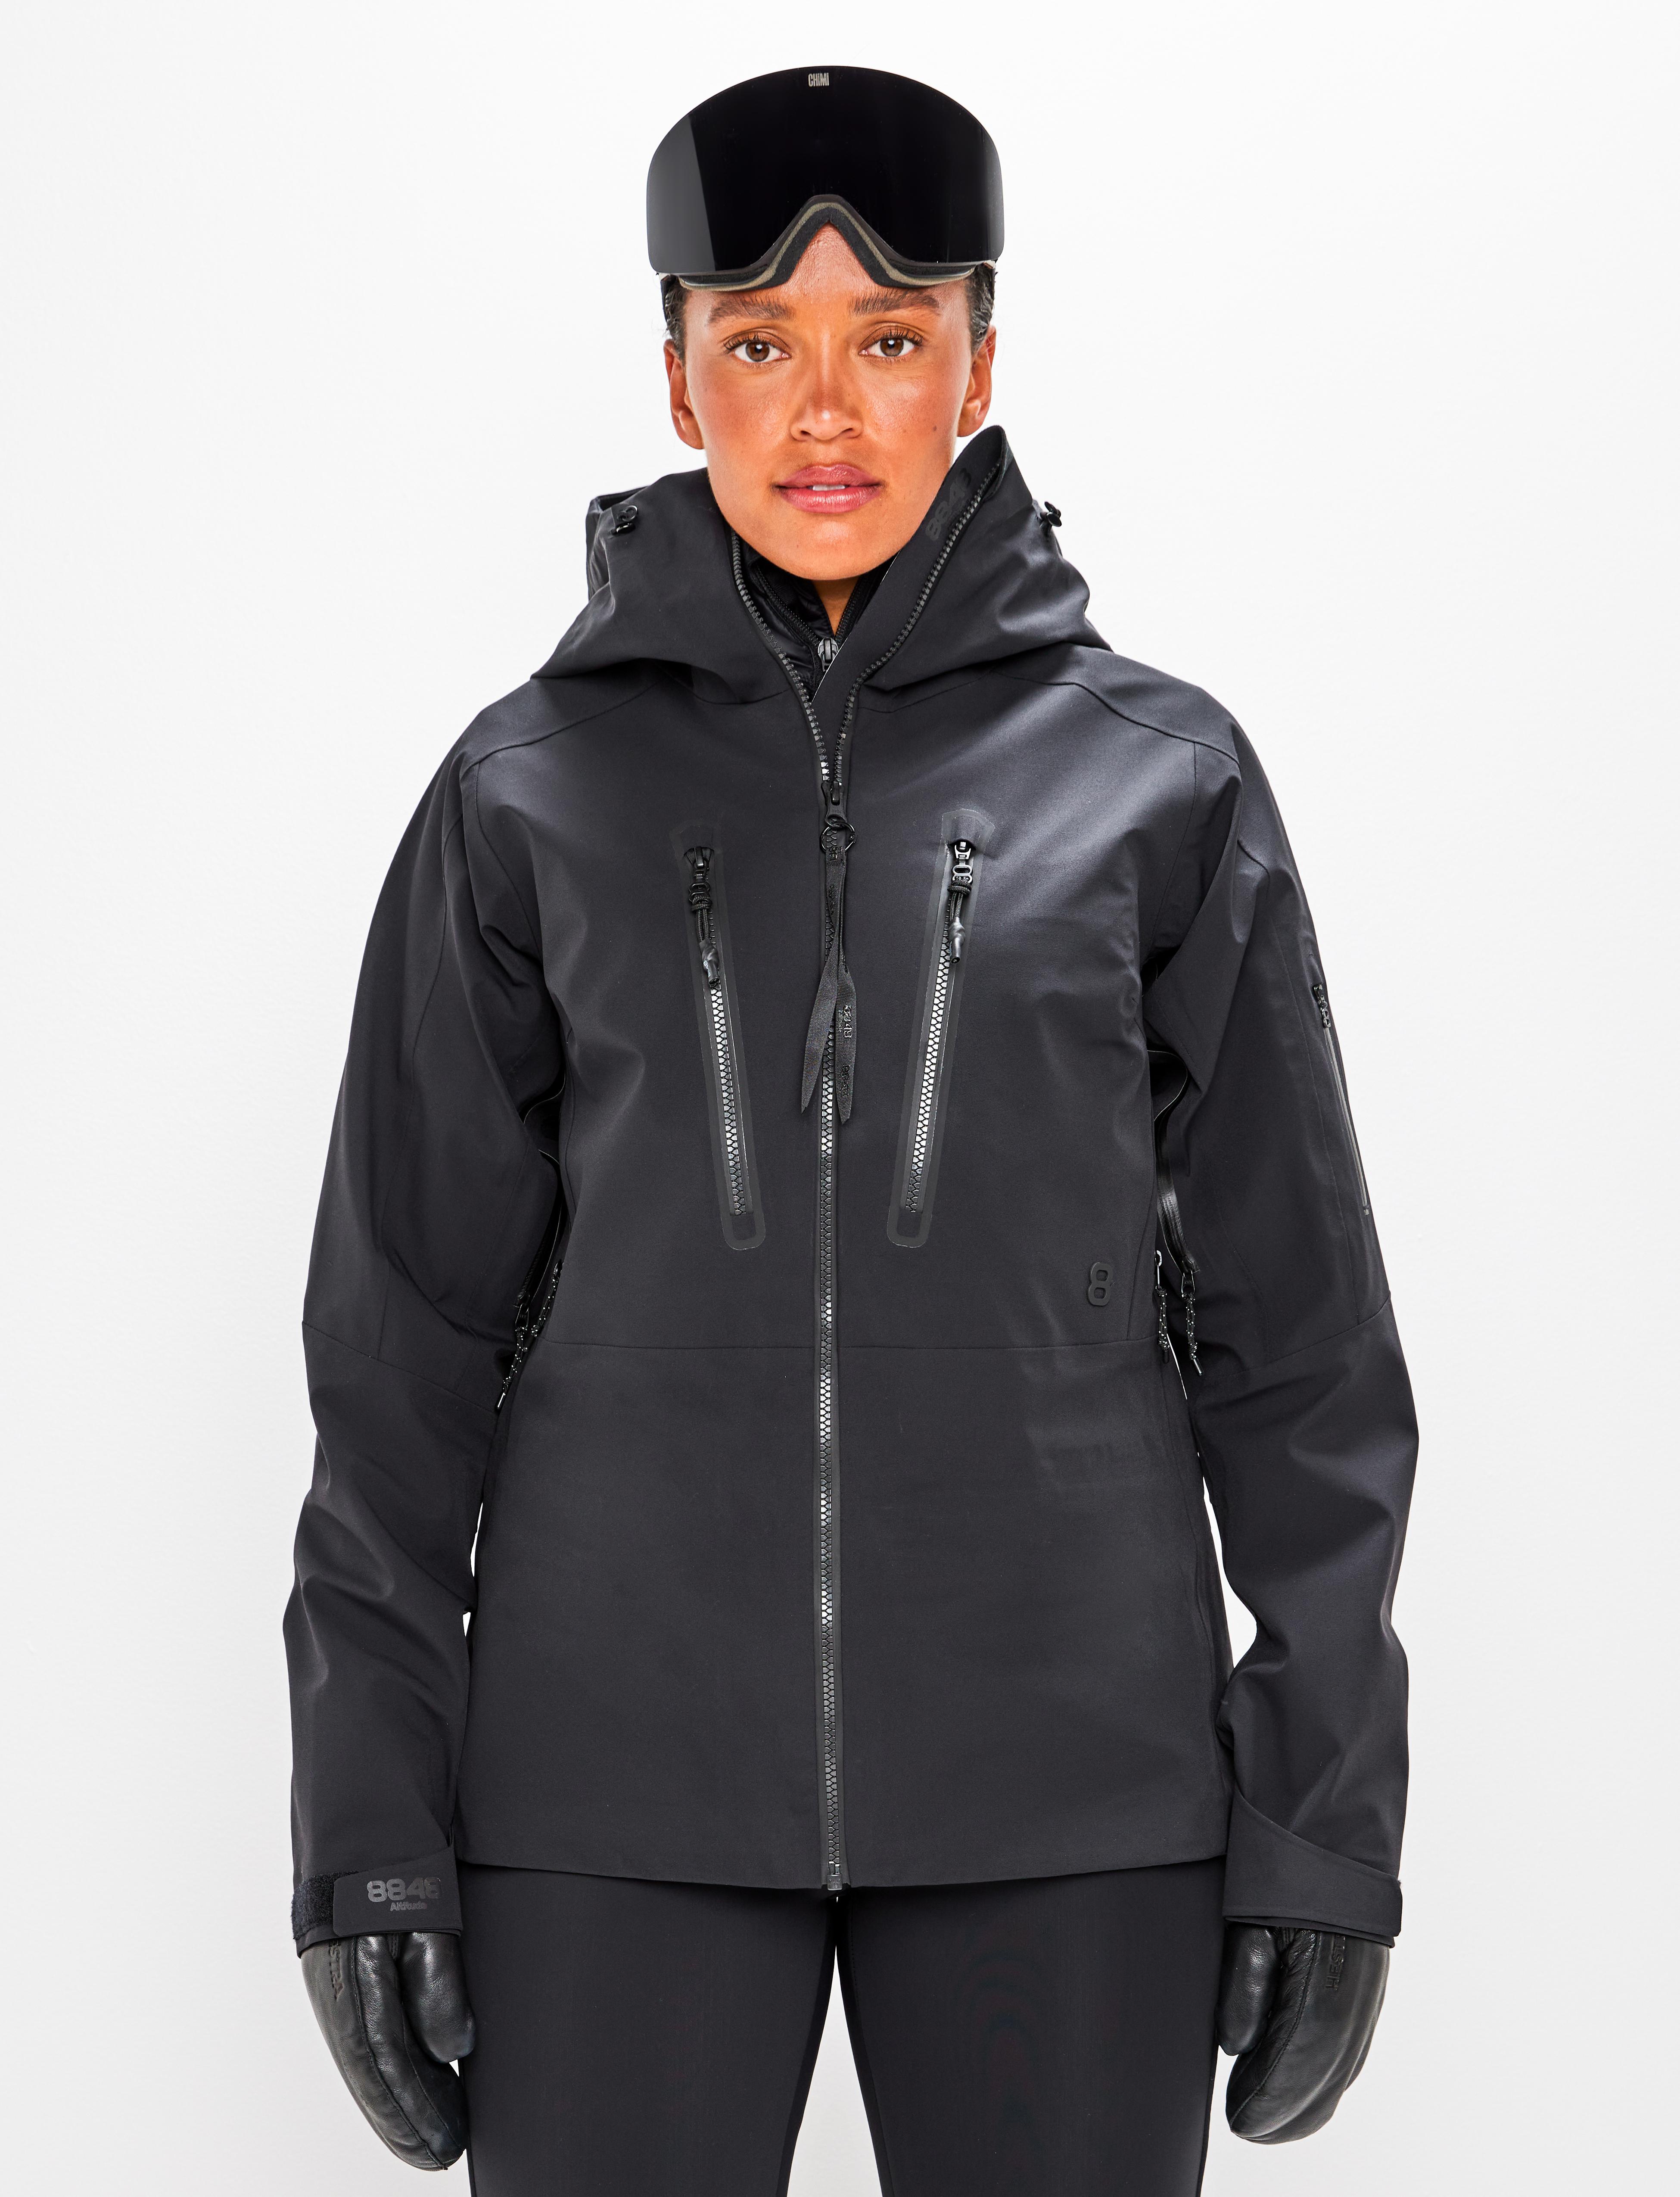 Pow W Jacket Black - Black ski jacket women